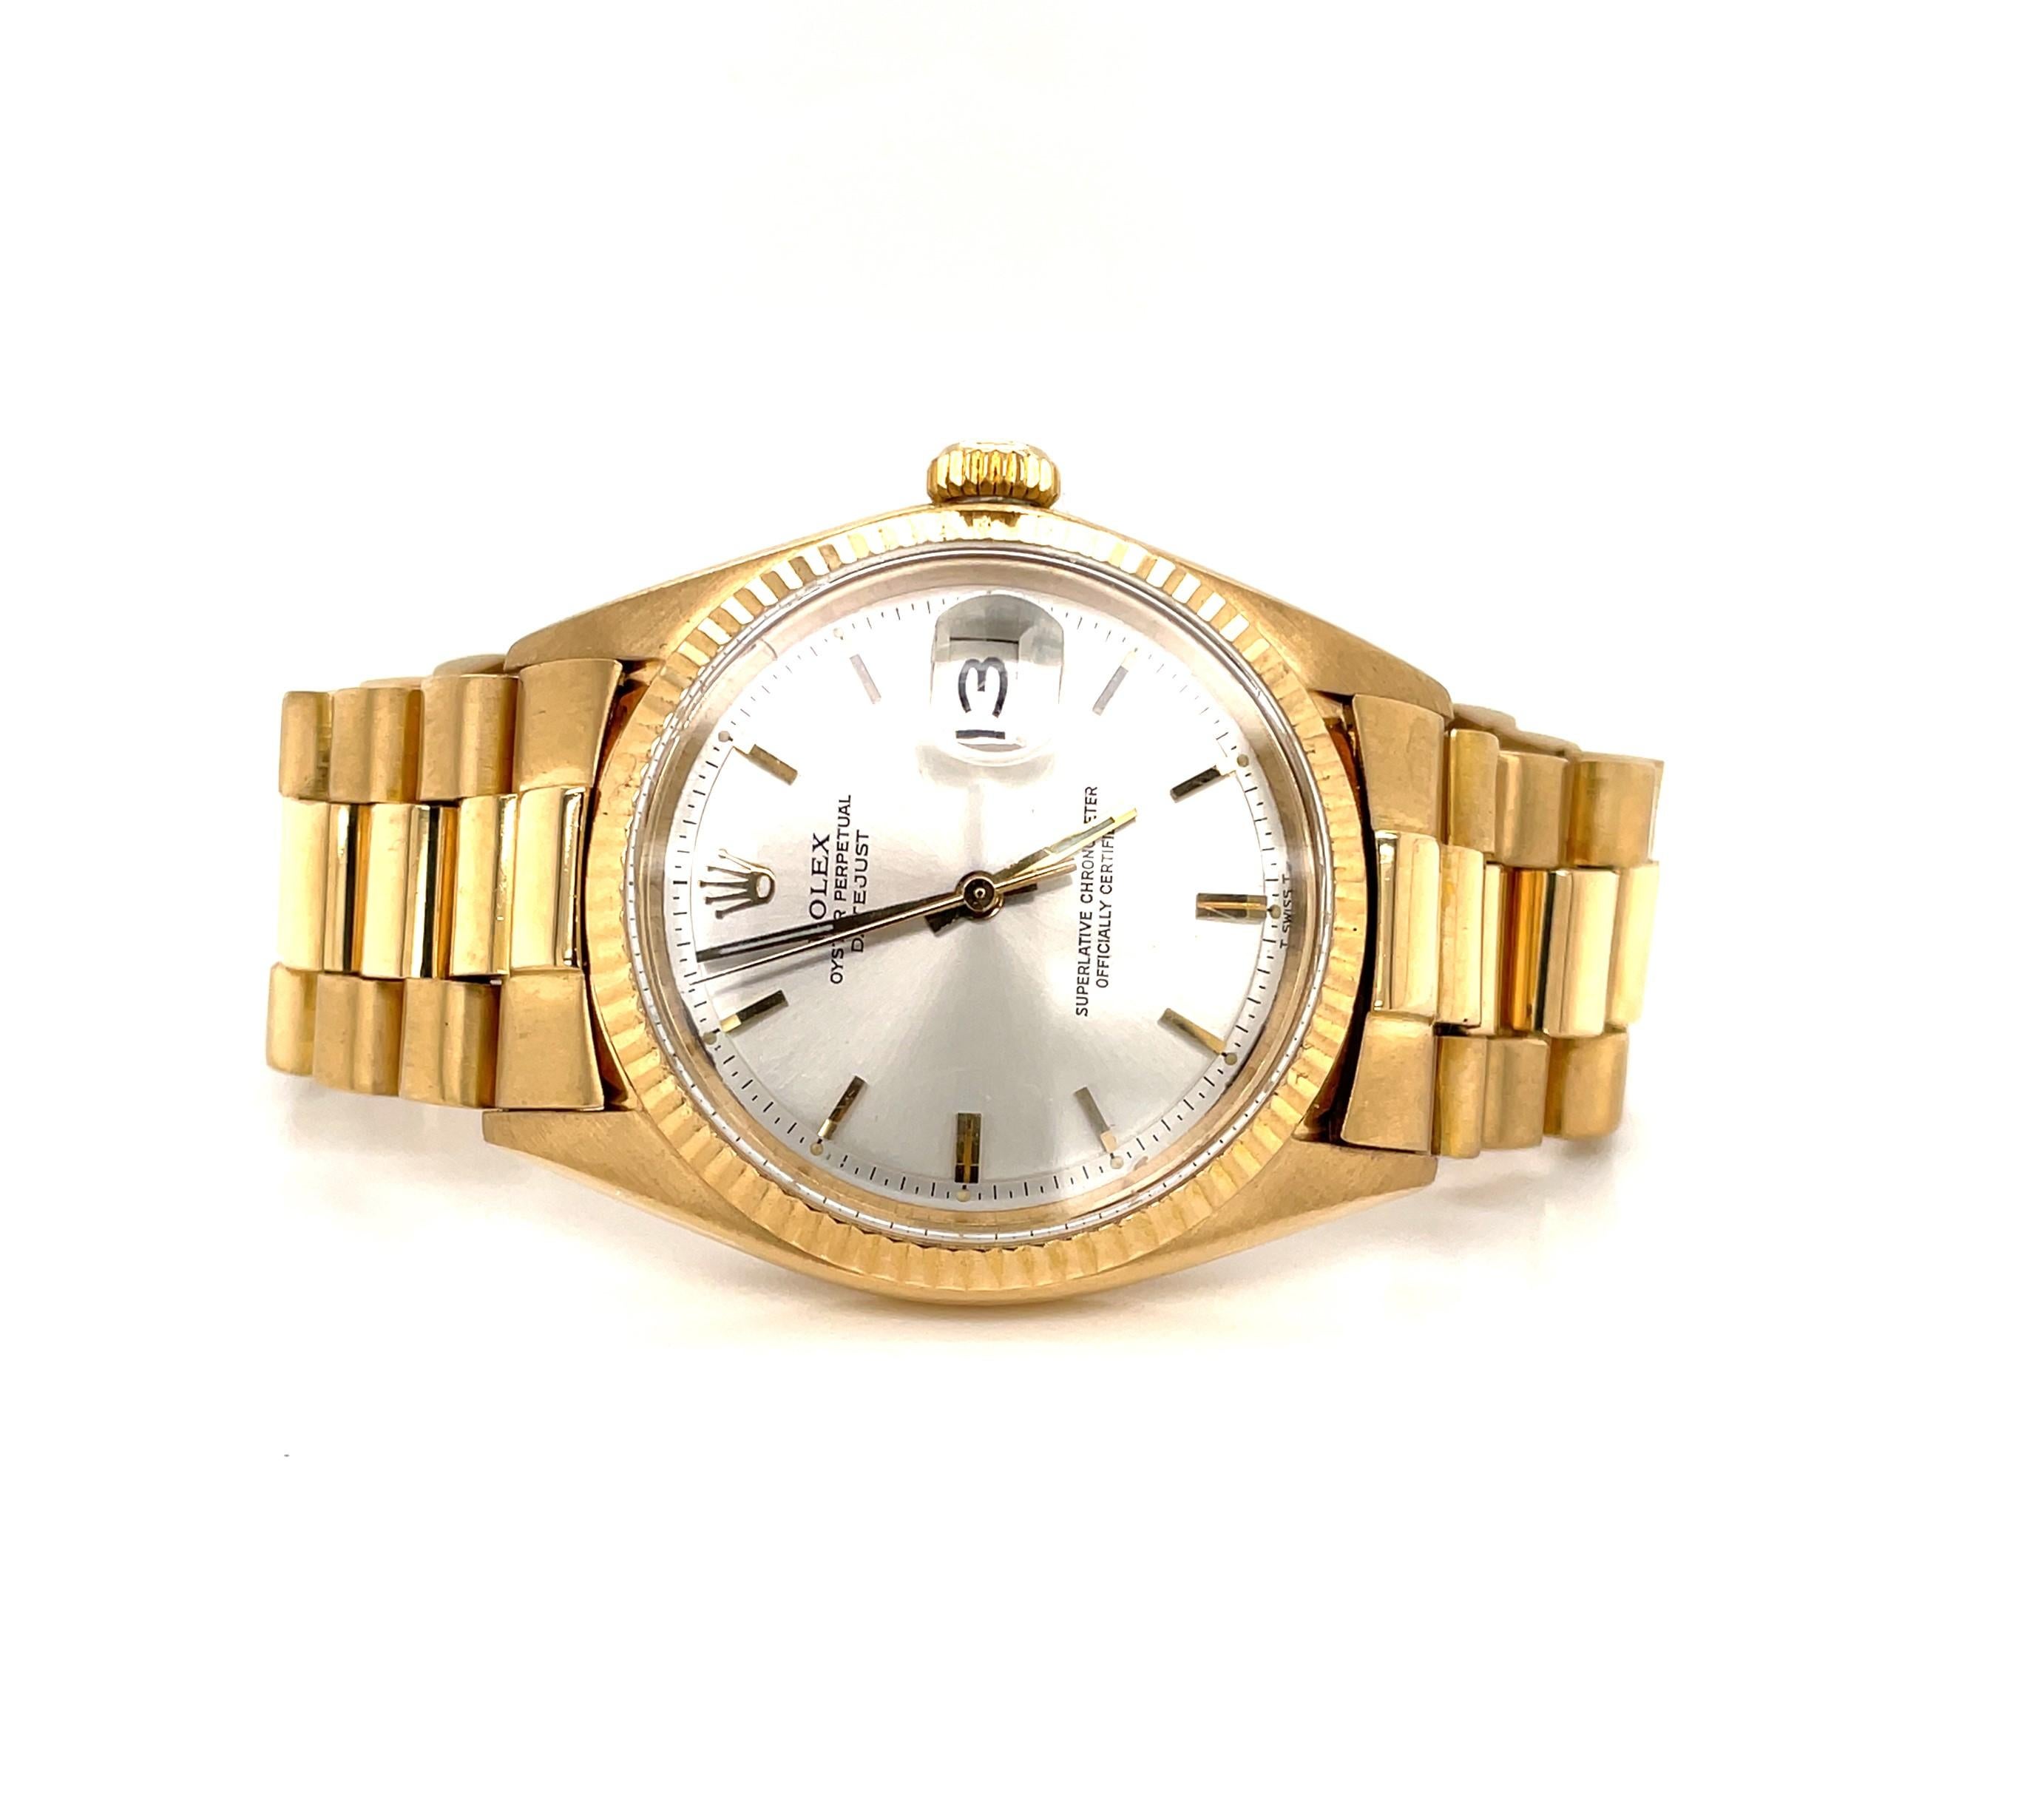 L'audace de l'or jaune 18 carats décrit cette montre-bracelet de luxe pour homme Rolex President 1601 DateJust 36 mm. Circa 1962, ce modèle Rolex très populaire, avec cadran blanc, aiguilles au tritium, points lumineux, lunette cannelée et verre